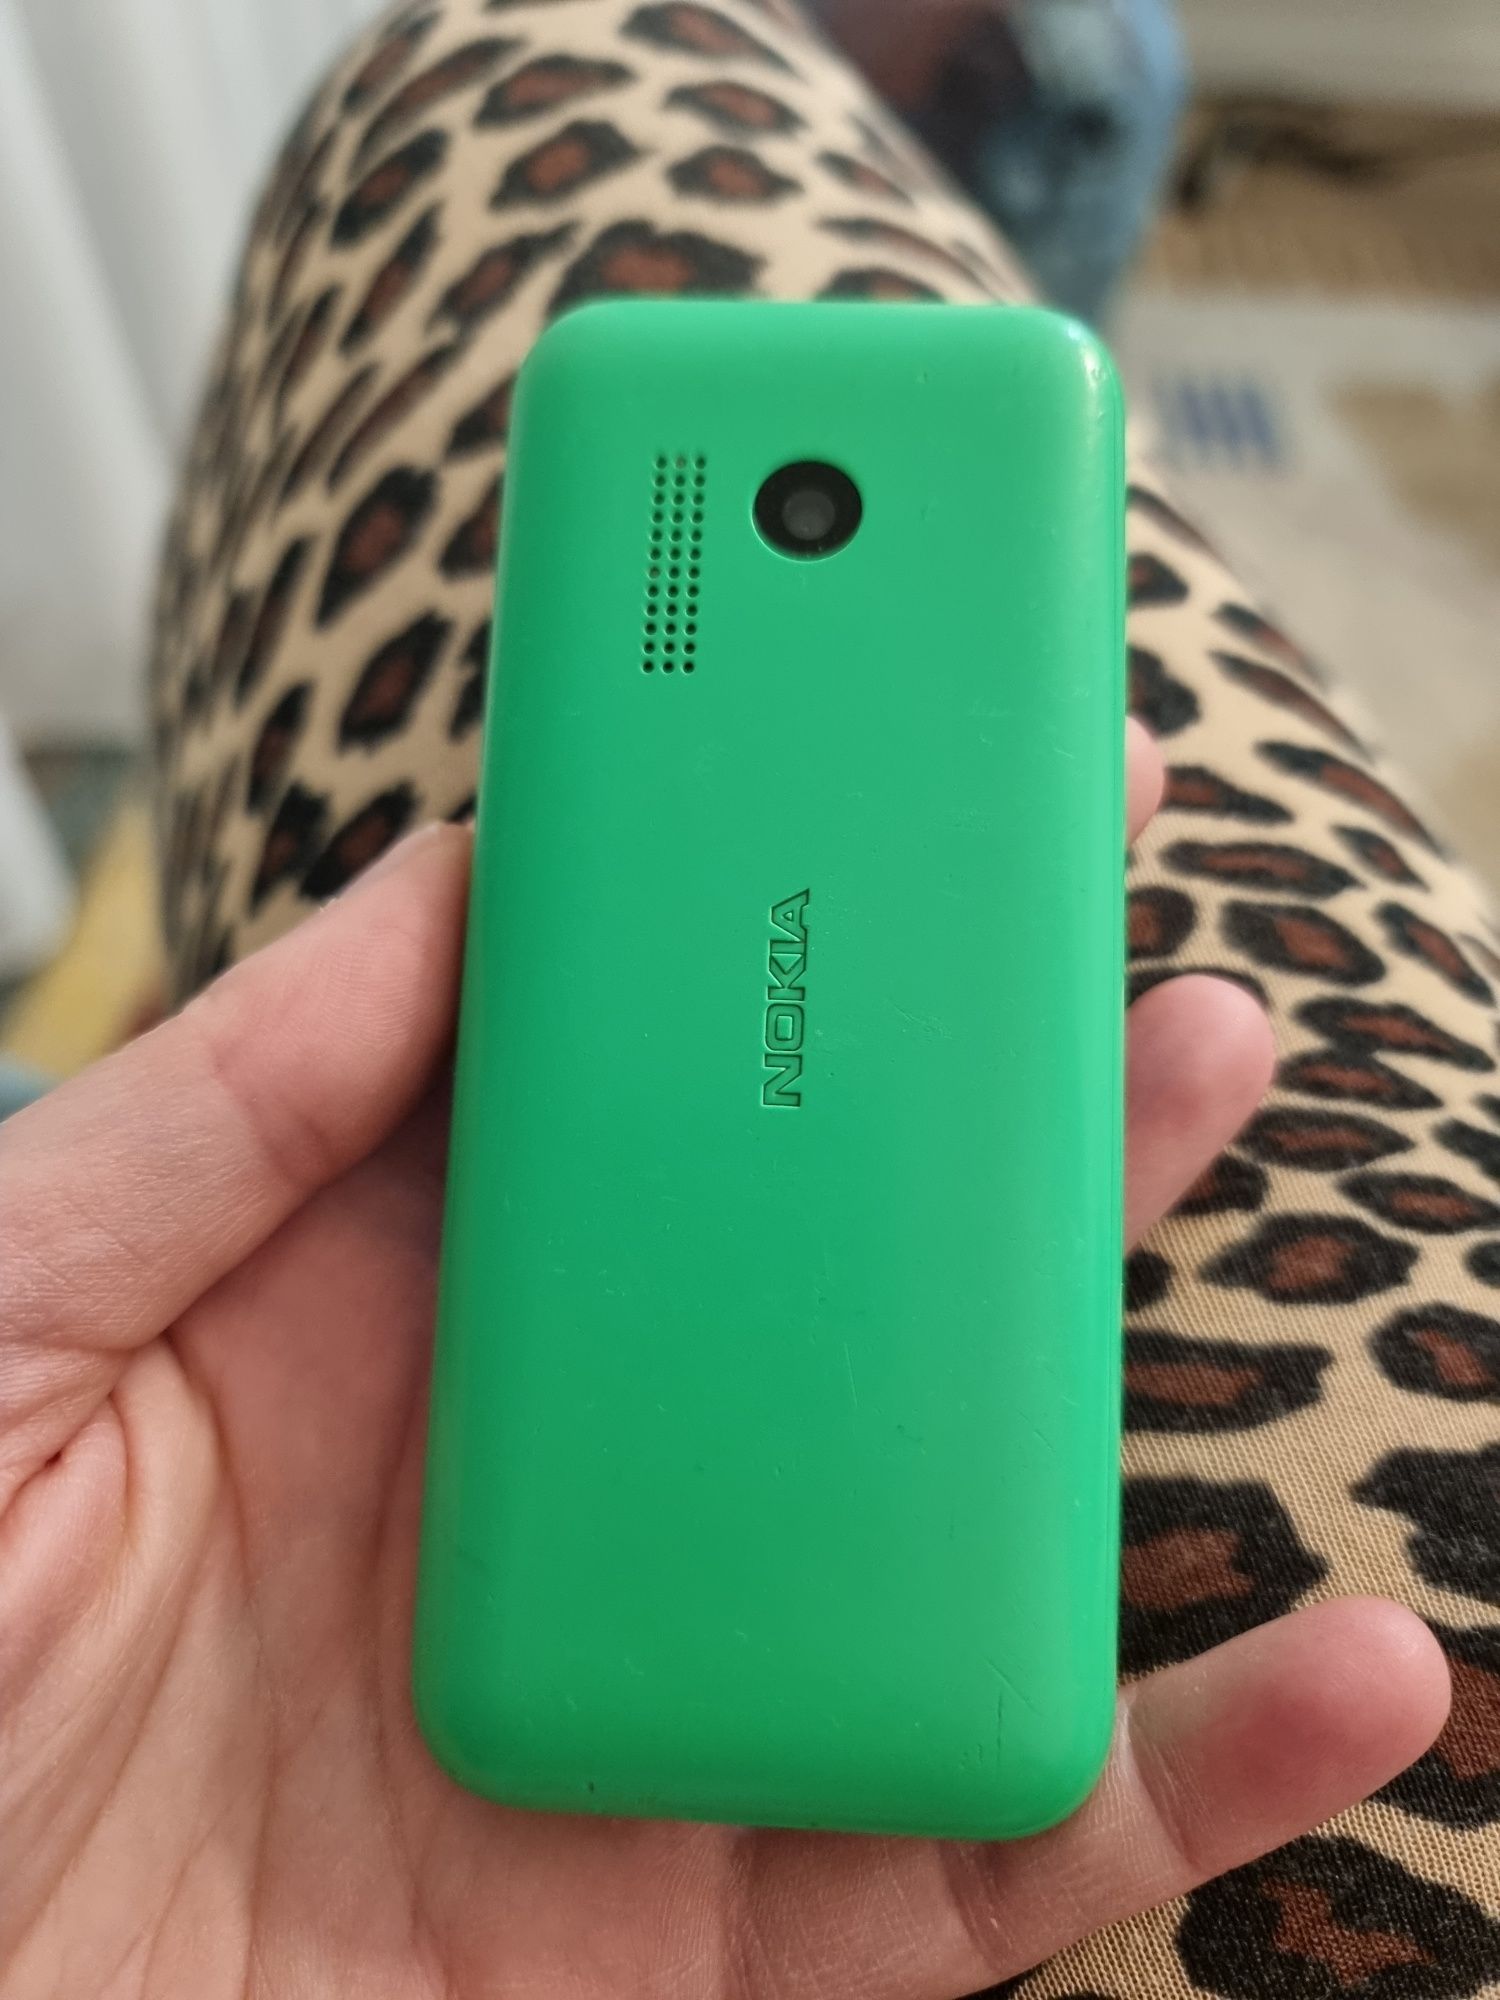 Telefon Nokia RM 1110 zielony